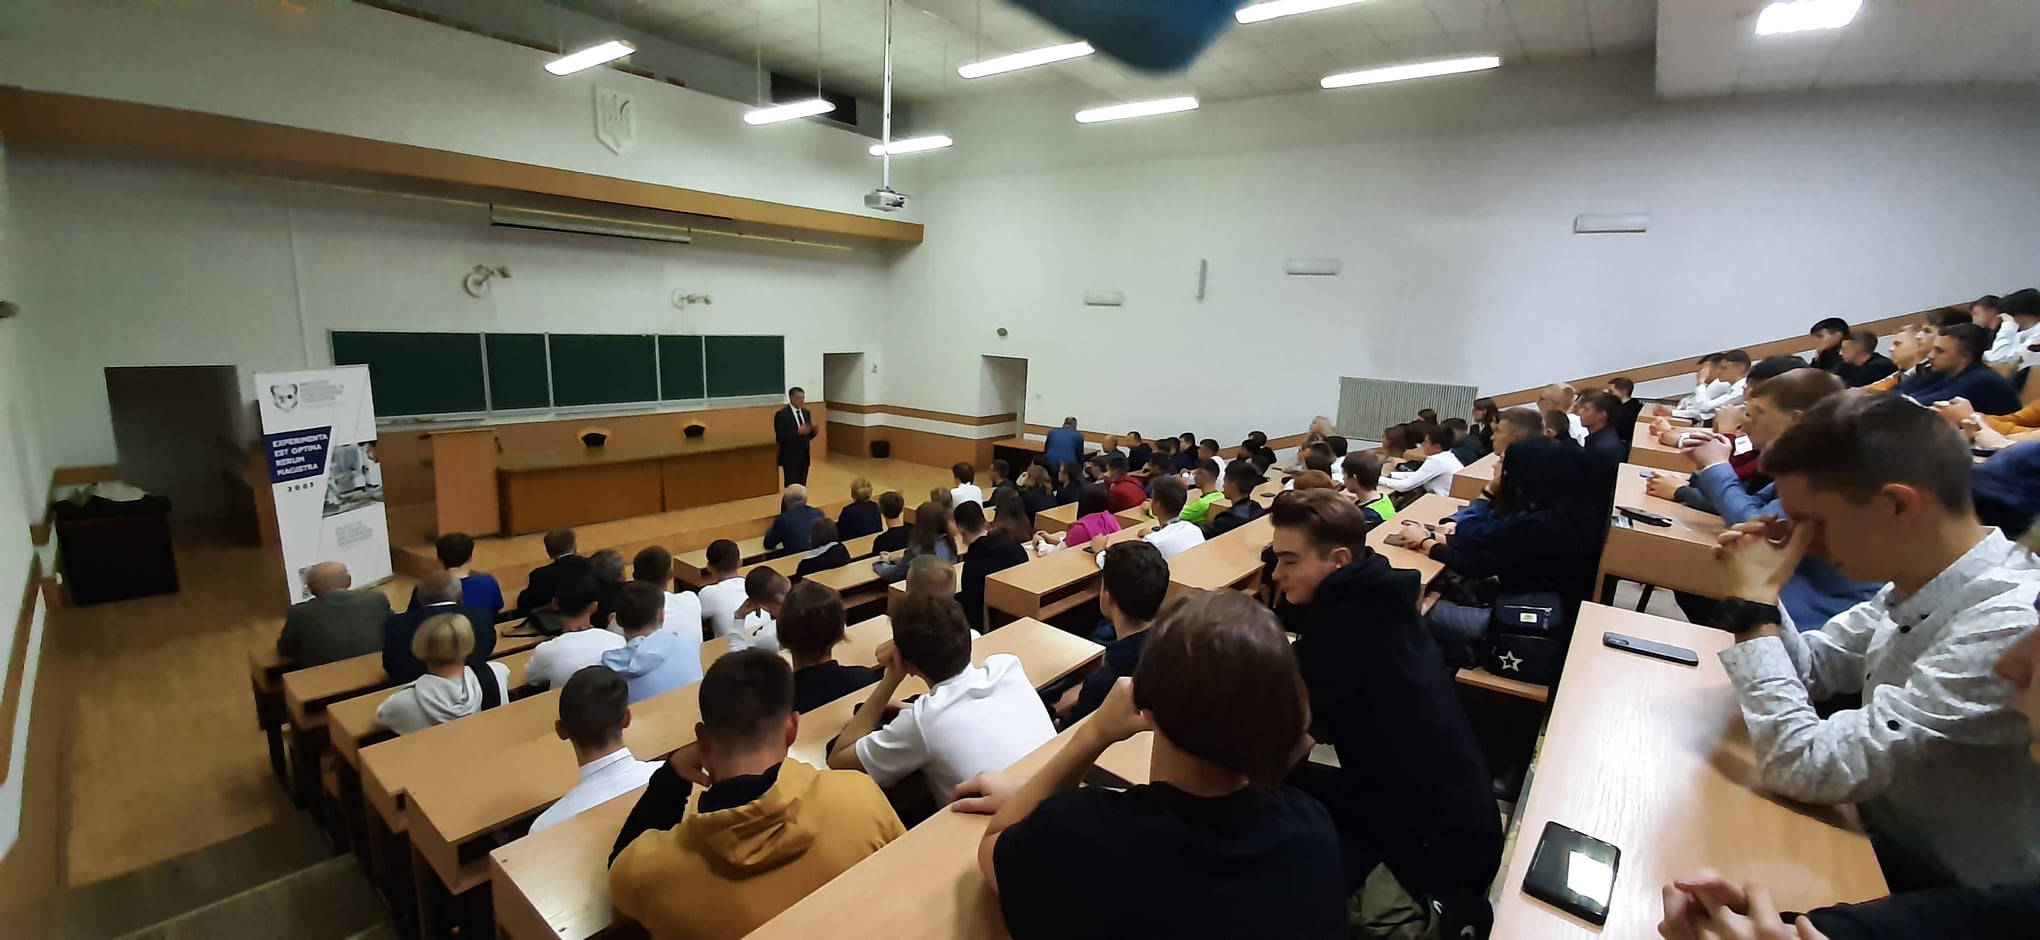 Верховна Рада України прийняла у першому читанні законопроект про зміни у фінансуванні вищої освіти